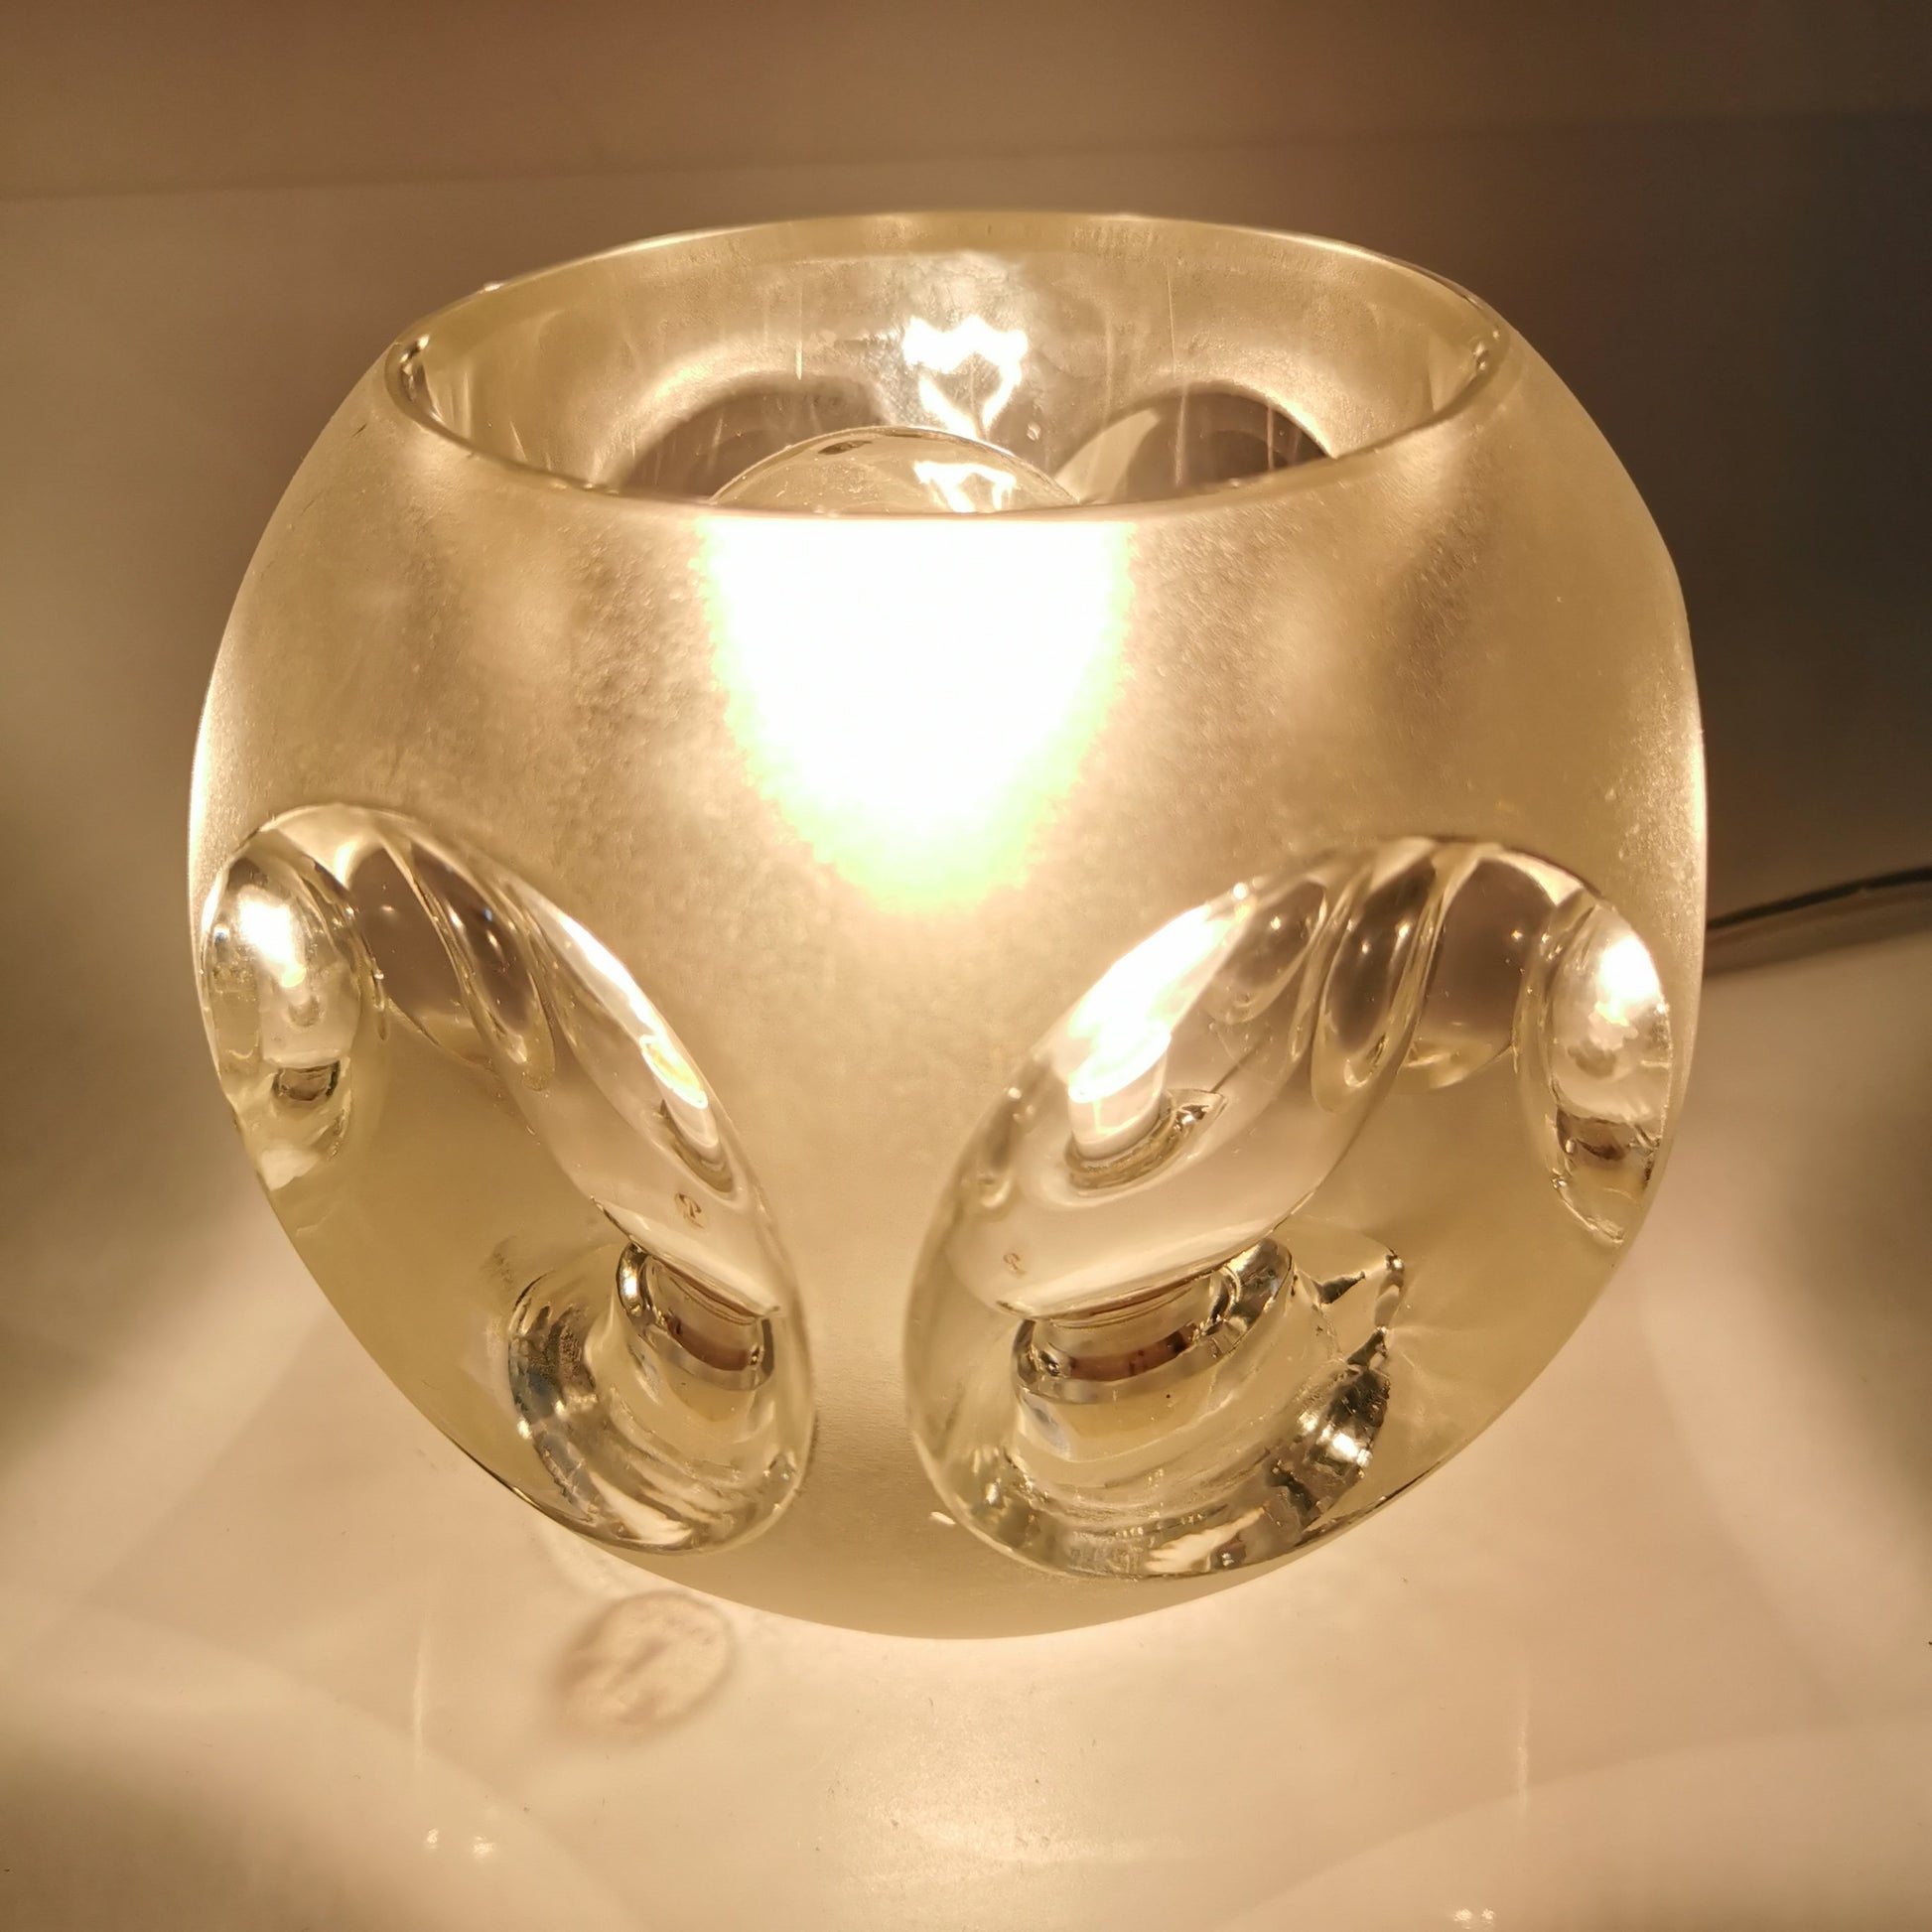 Tischlampe von Peill & Putzler Ice Cube Designklassiker um 1970 Lampen Putzler 